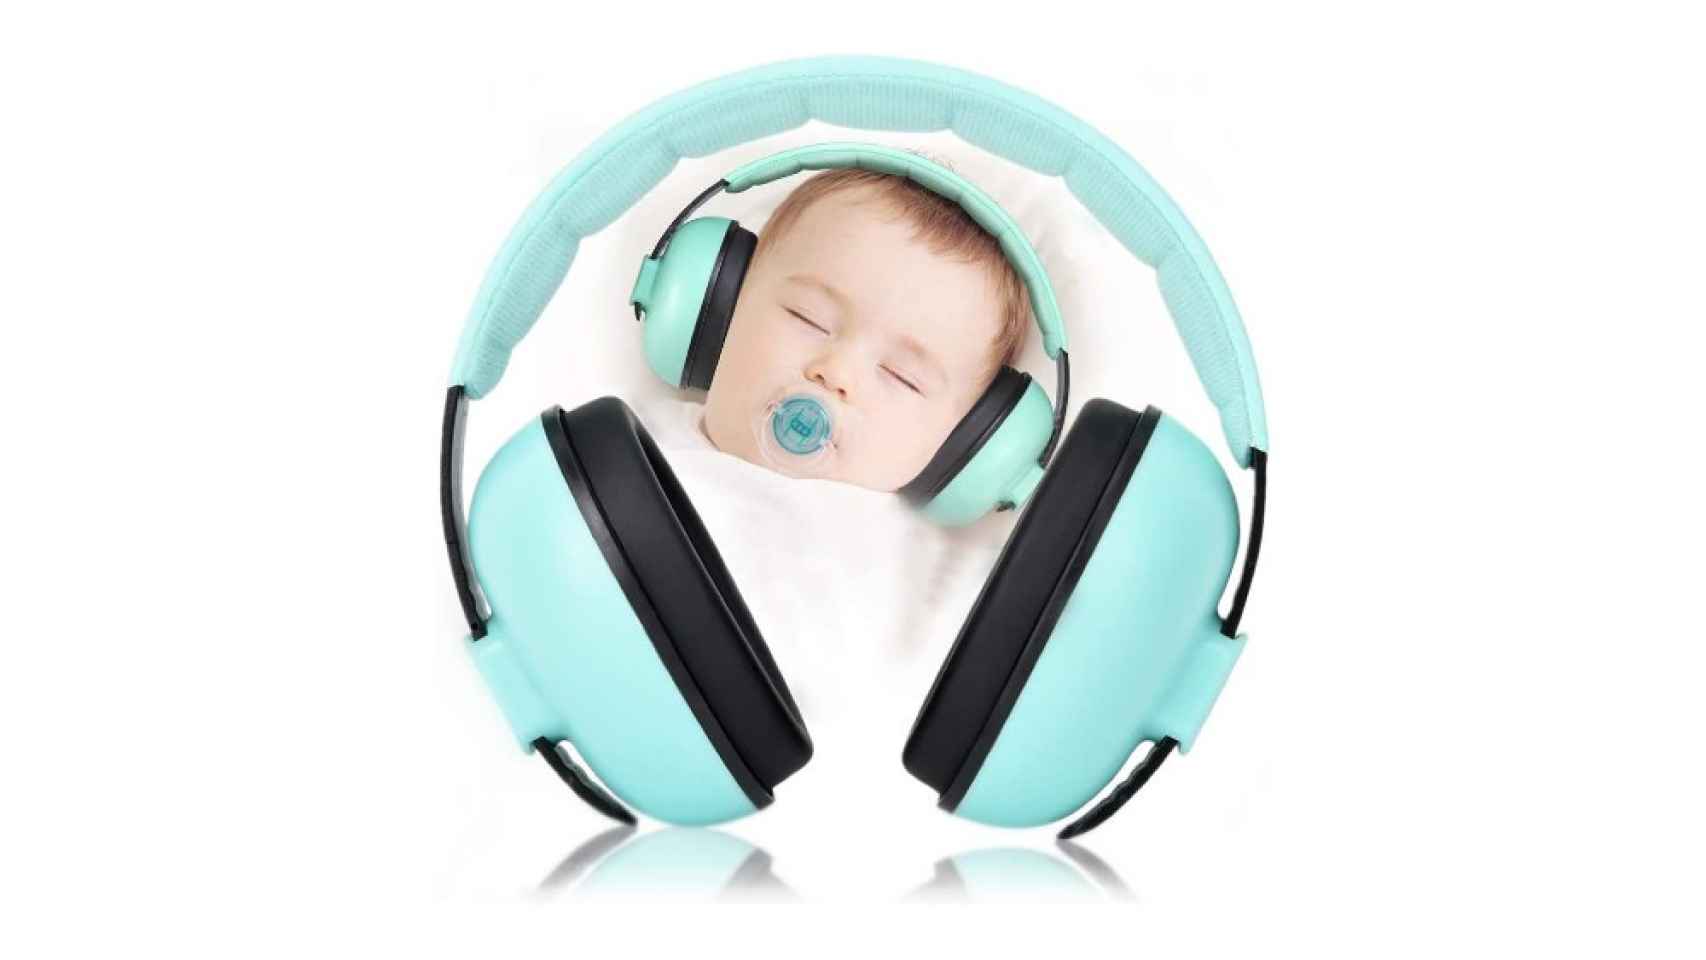 Auriculares Banz Modelo Azul cascos anti ruido Baby (de 3 meses a